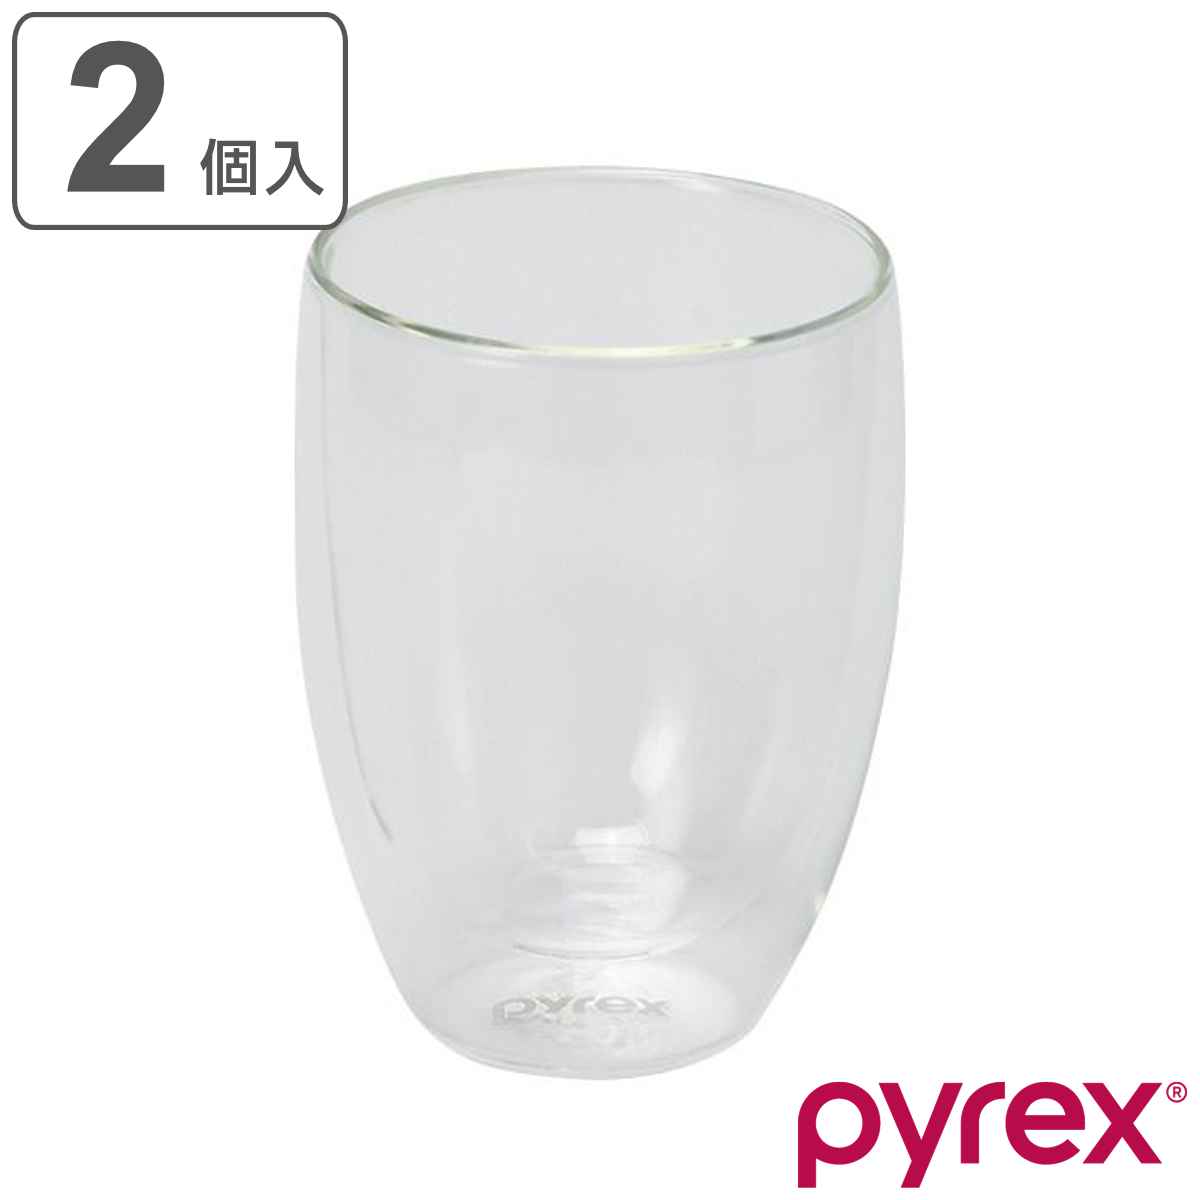 ダブルウォール グラス 2個入り 250ml Pyrex パイレックス 耐熱ガラス